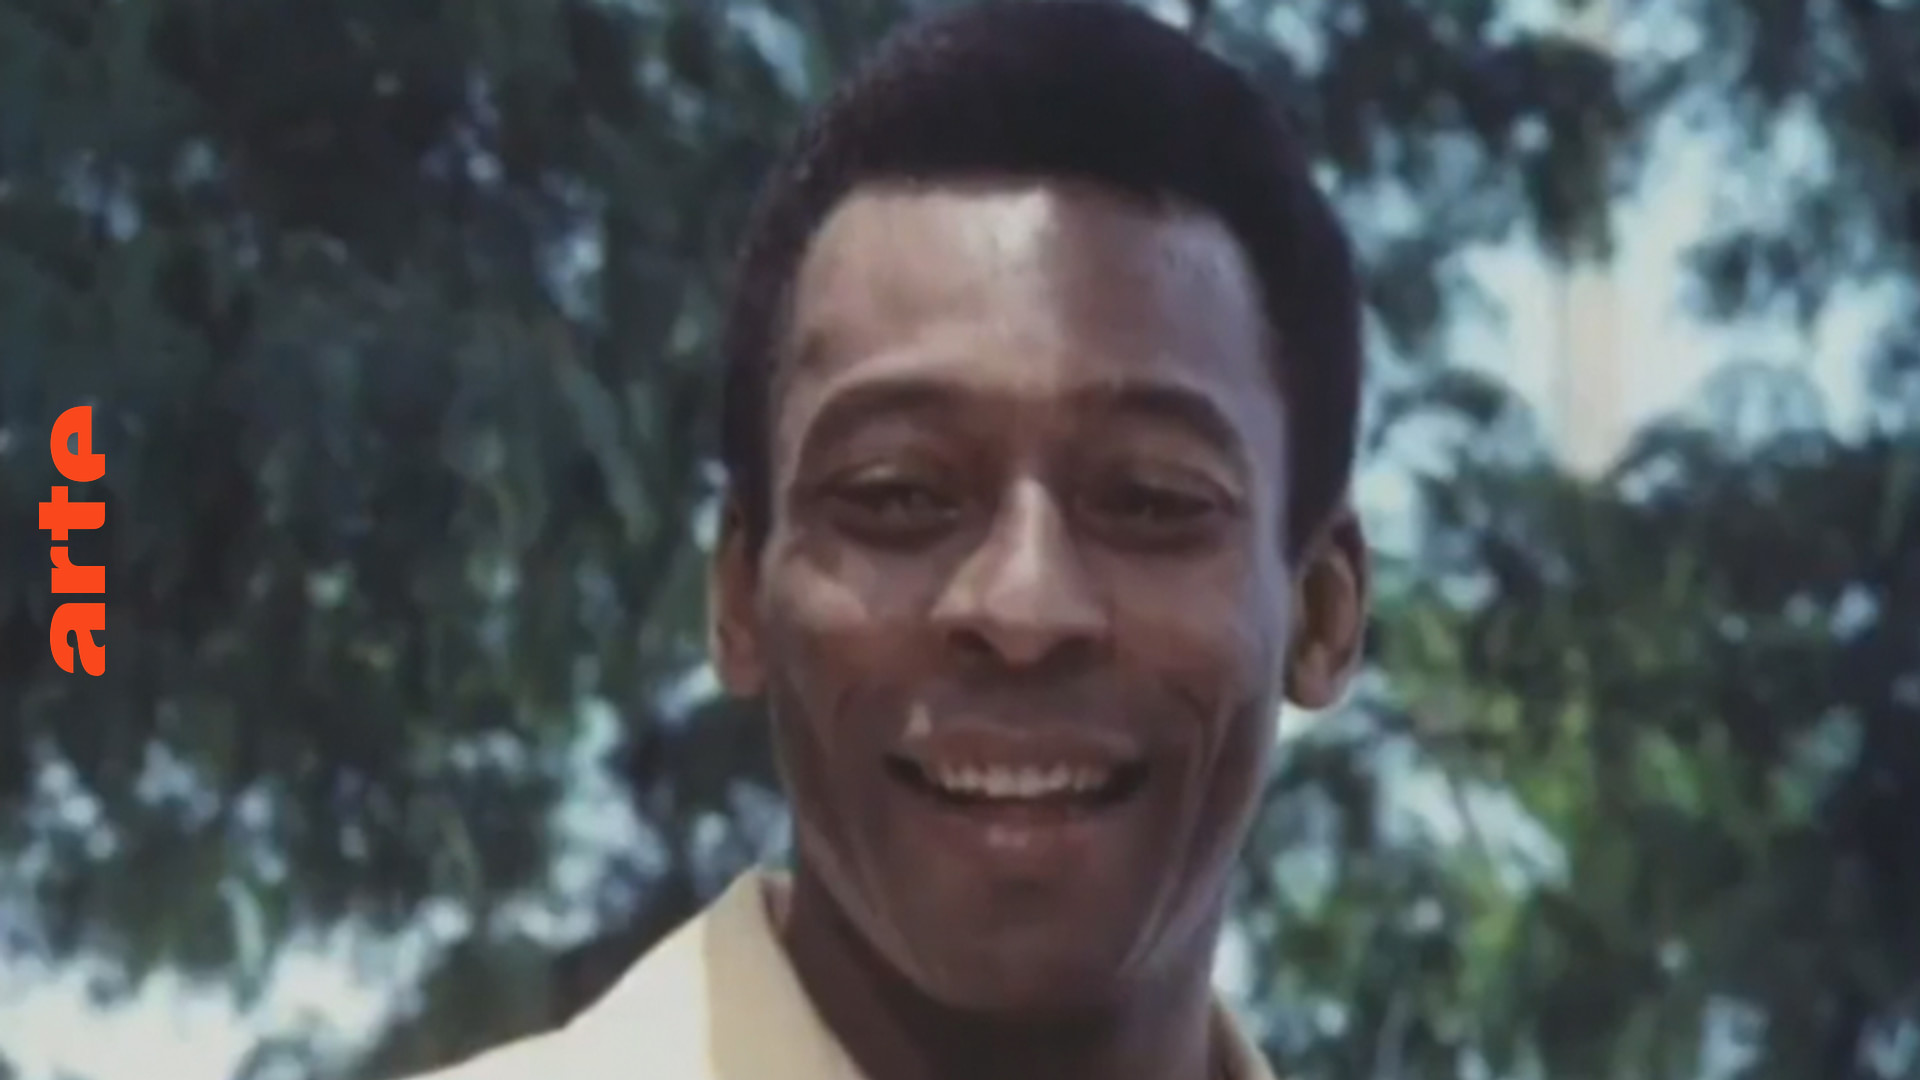 Blow up - Erinnern Sie sich an Pelé als Schauspieler?